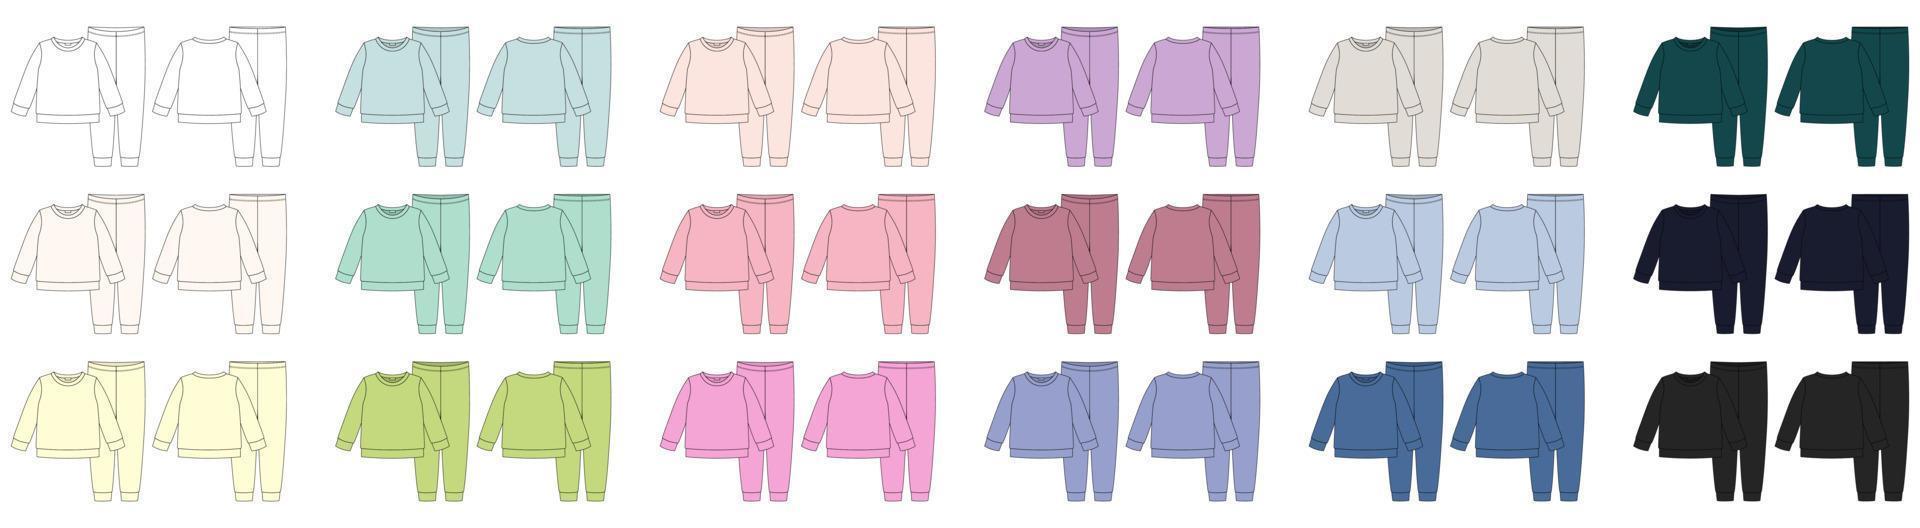 conjunto de esboço técnico de pijama de vestuário. calça e moletom infantil de algodão colorido. as crianças descrevem a coleção de modelos de design de roupas de dormir. vetor